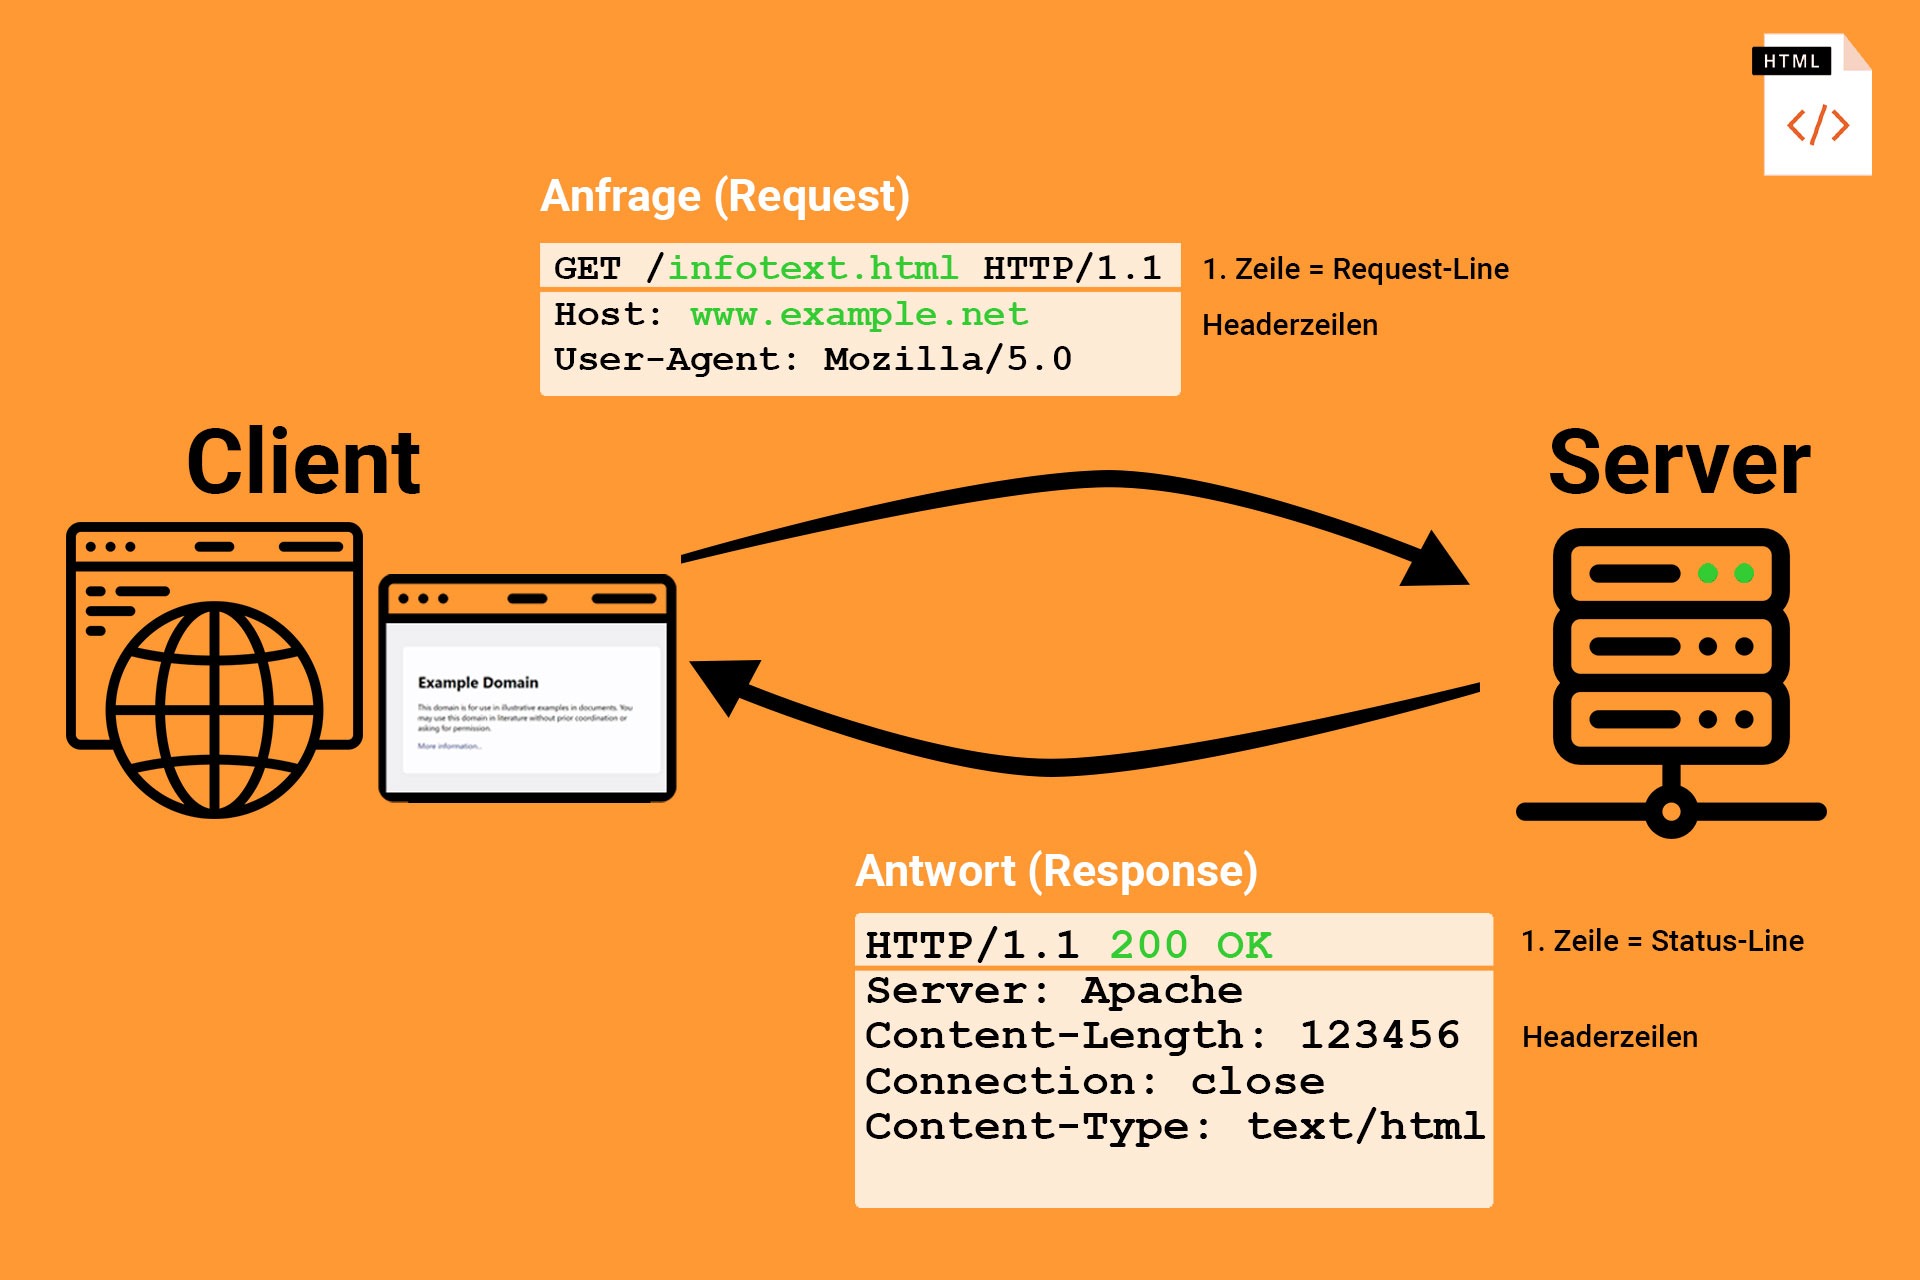 Abbildung: Client erstellt GET-Anfrage und Server antwortet mit HTTP-Response